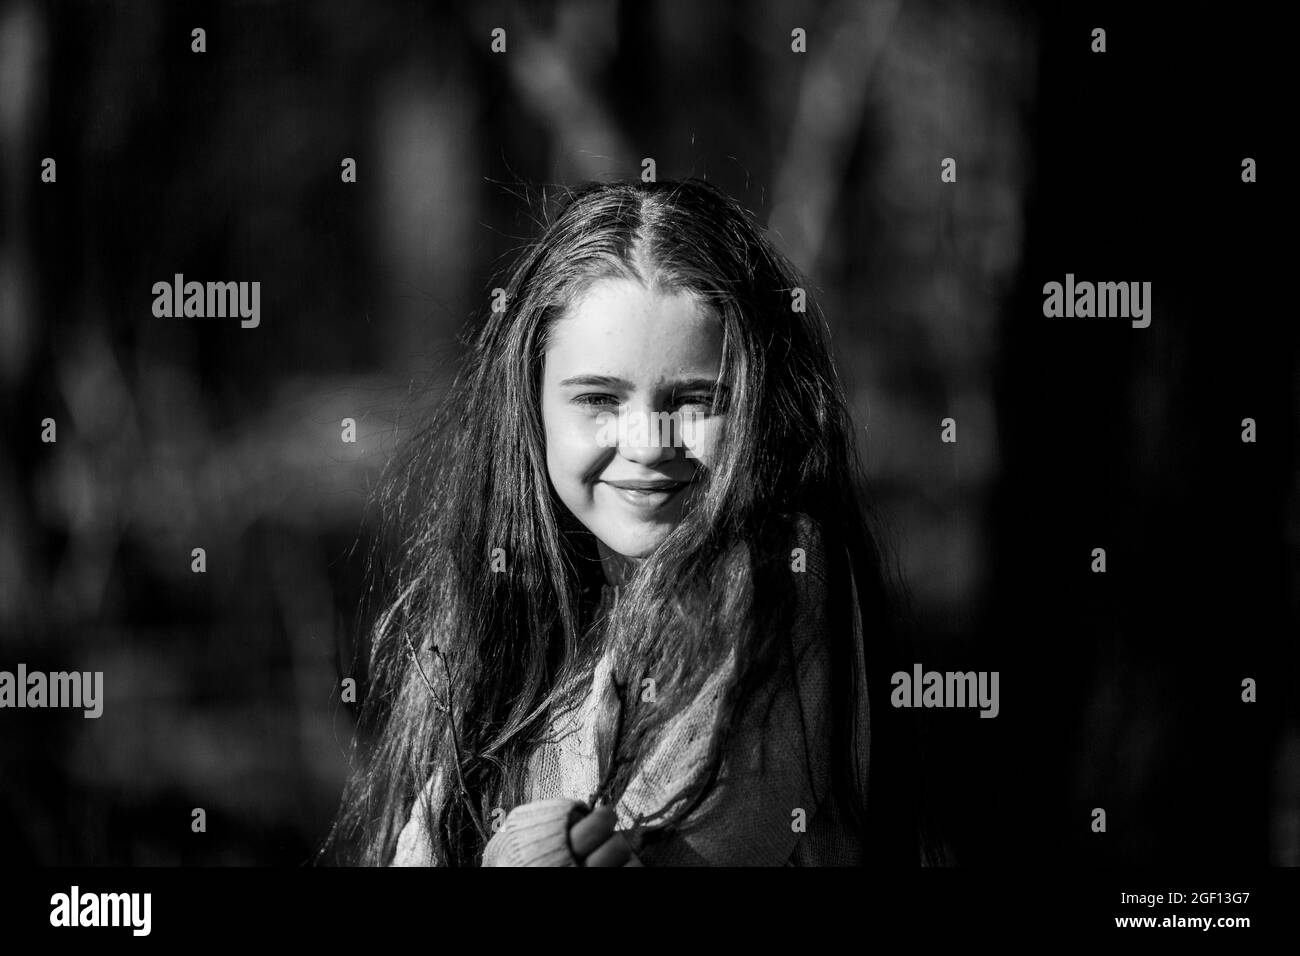 Porträt eines Teenagers auf der Straße. Schwarzweiß-Foto. Stockfoto